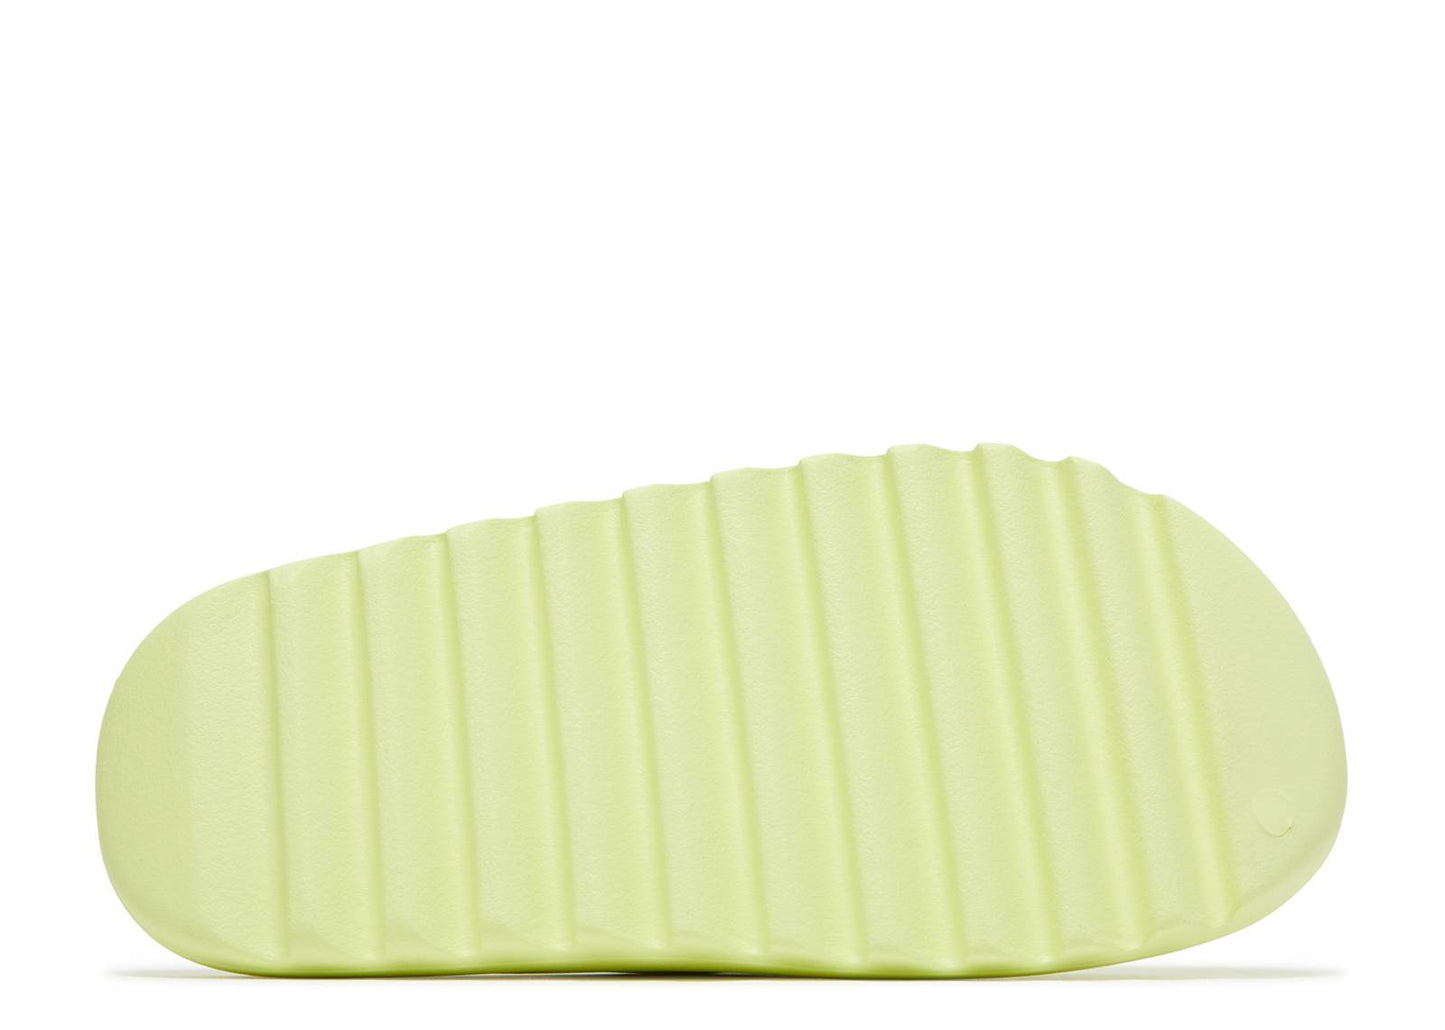 Adidas Yeezy Slide "Glow Green" 2022